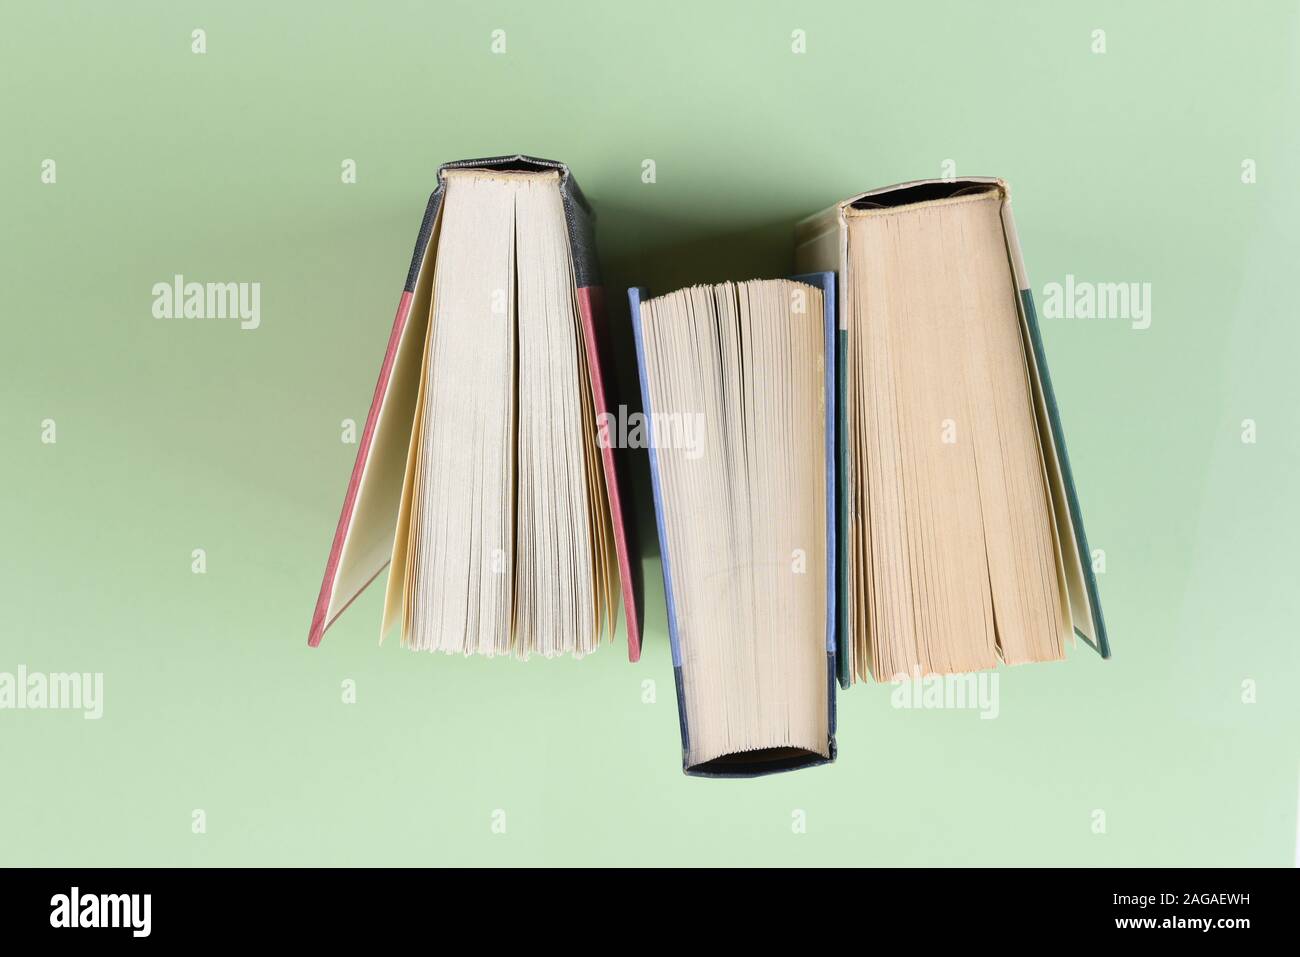 Über Kopf geschossen von drei Text Bücher stehen auf Ende auf einem hellgrünen Hintergrund. Stockfoto